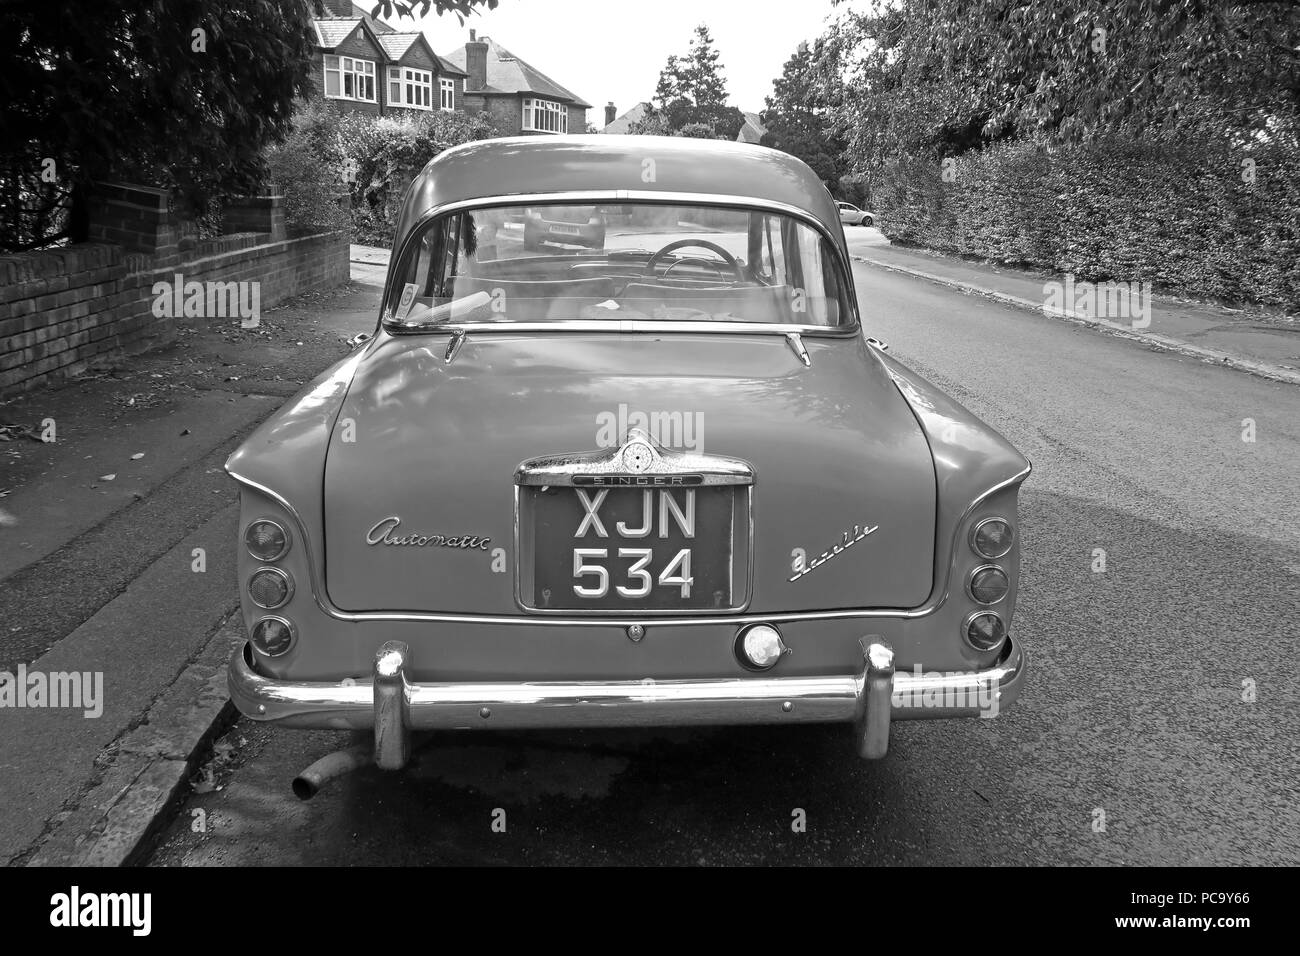 Singer Gazelle classic car, blau, XJN534, auf der Straße, Stockton Heide, Warrington, Cheshire, North West England, Großbritannien Stockfoto